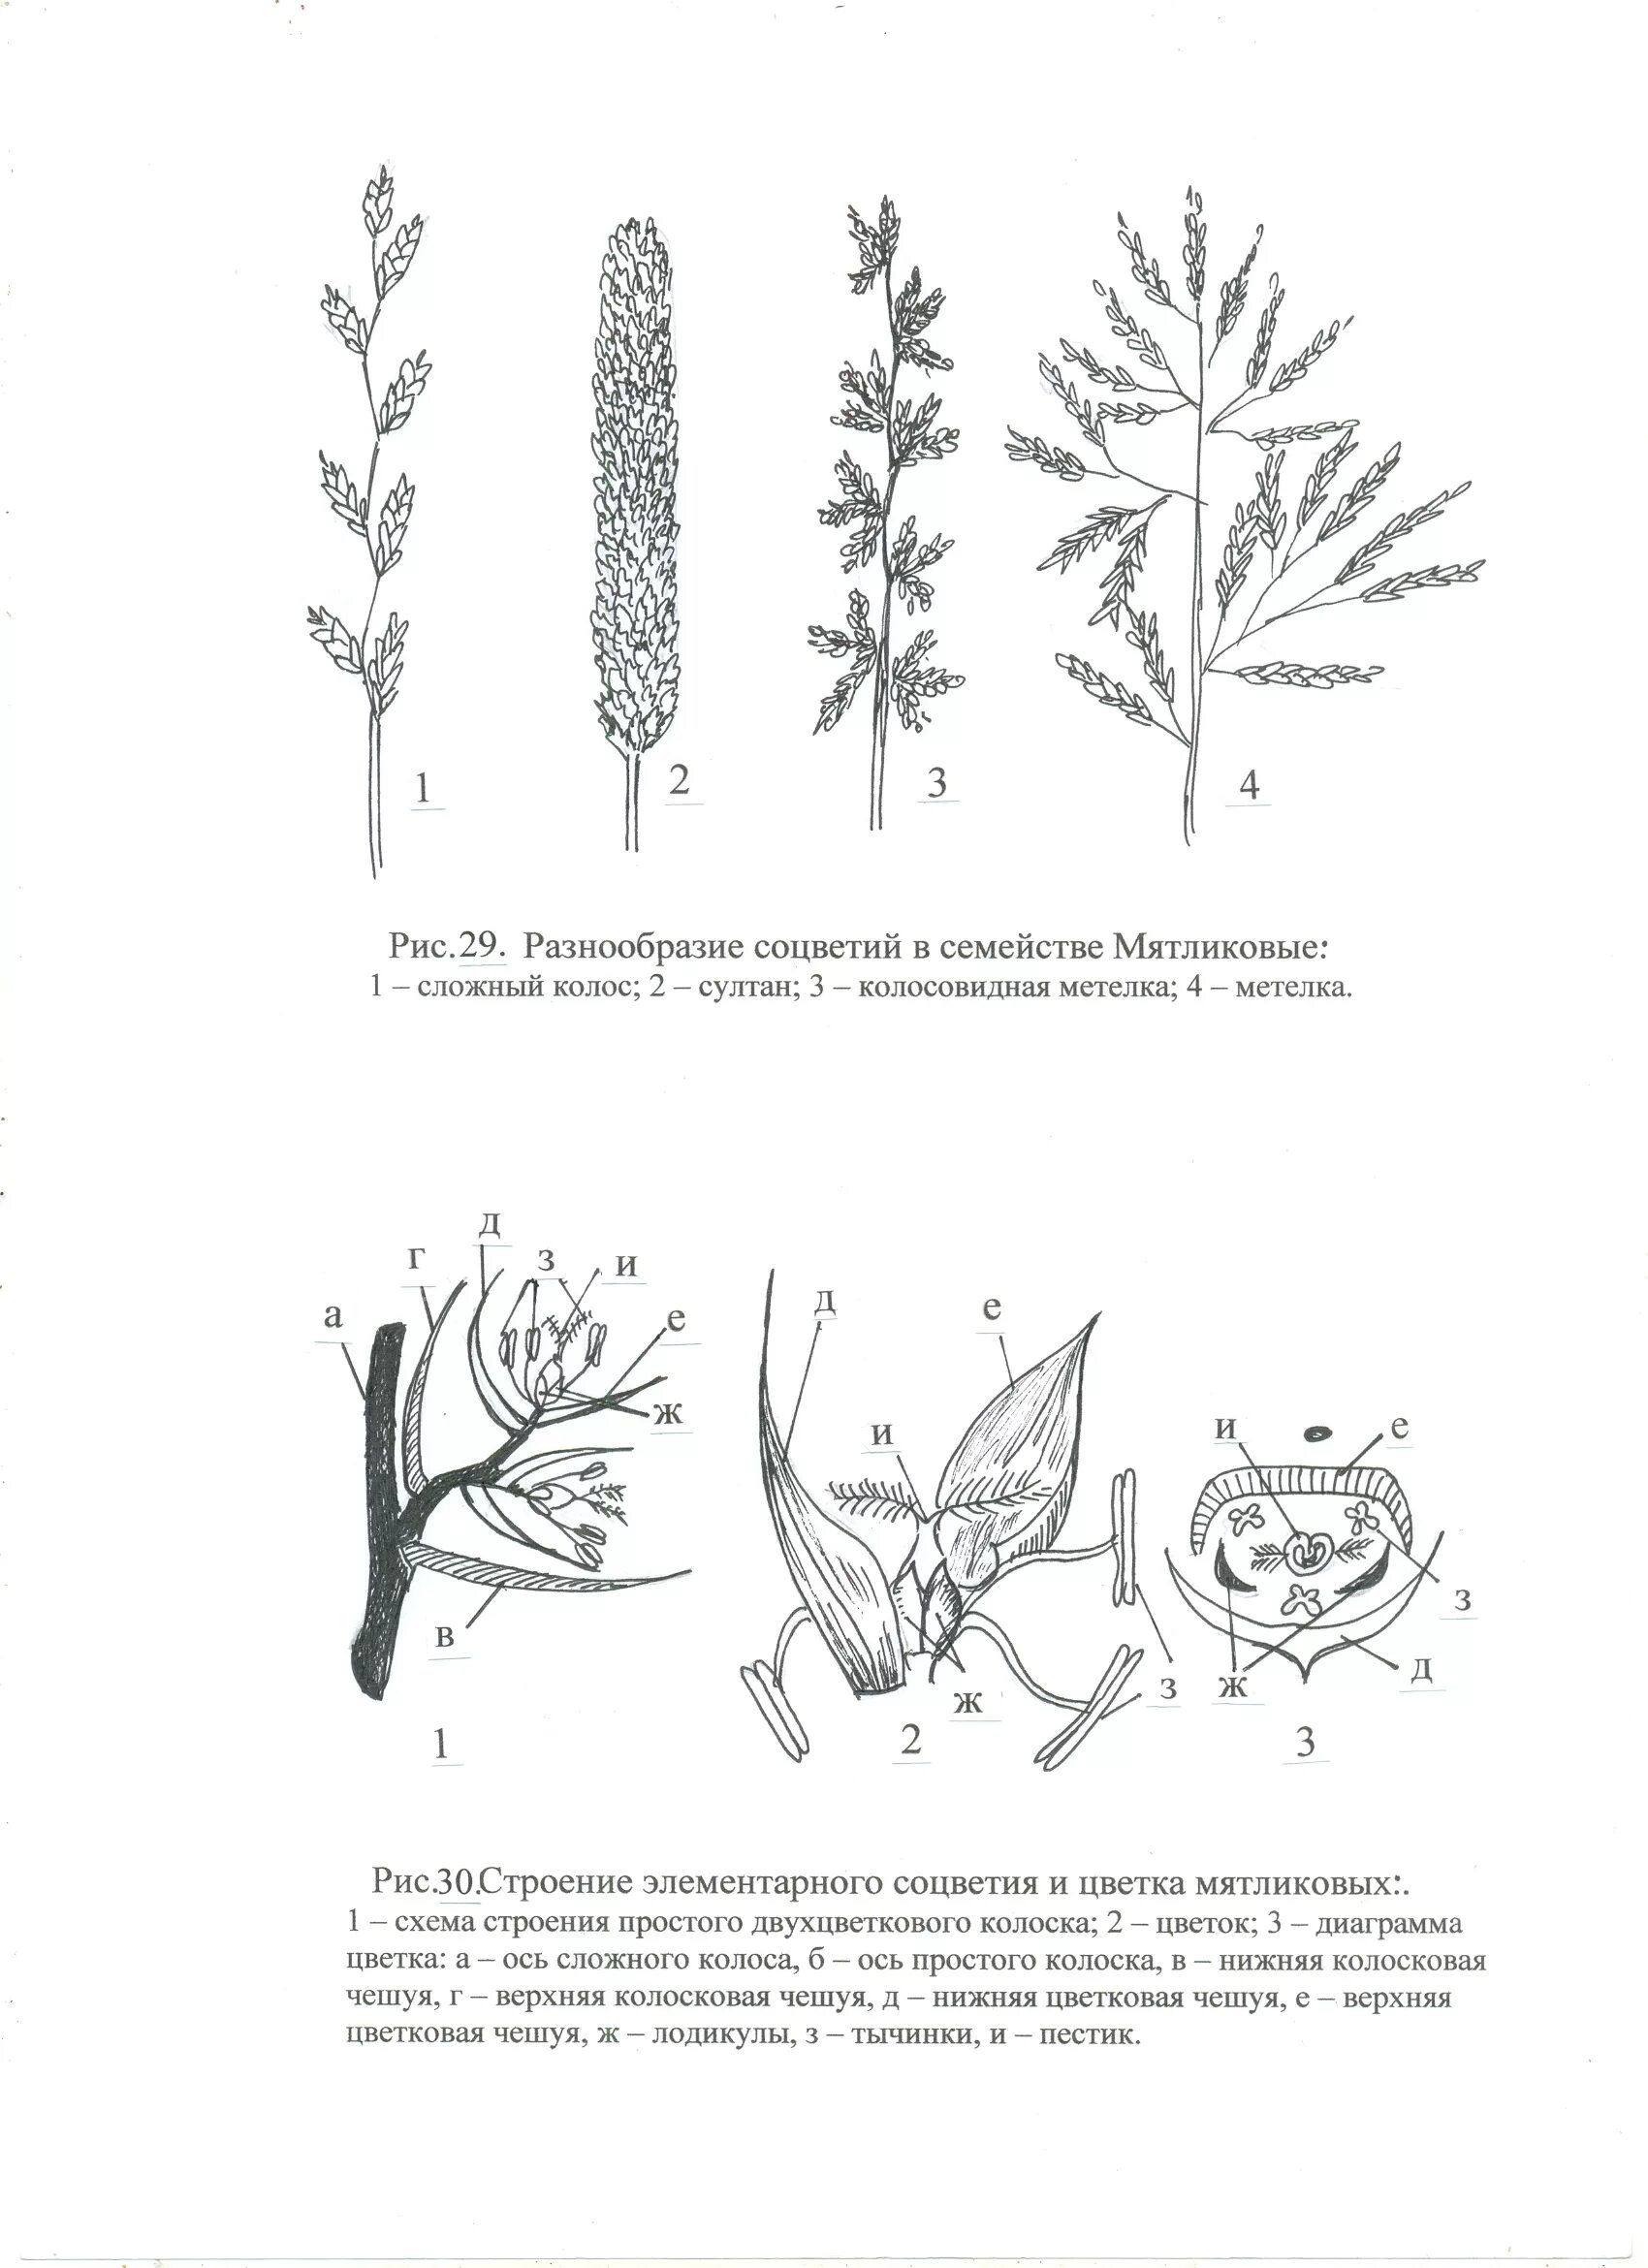 Злаки растения соцветие. Соцветие злаковых мятликовых. Схема цветка злаковых растений. Схемы соцветий злаковых растений.